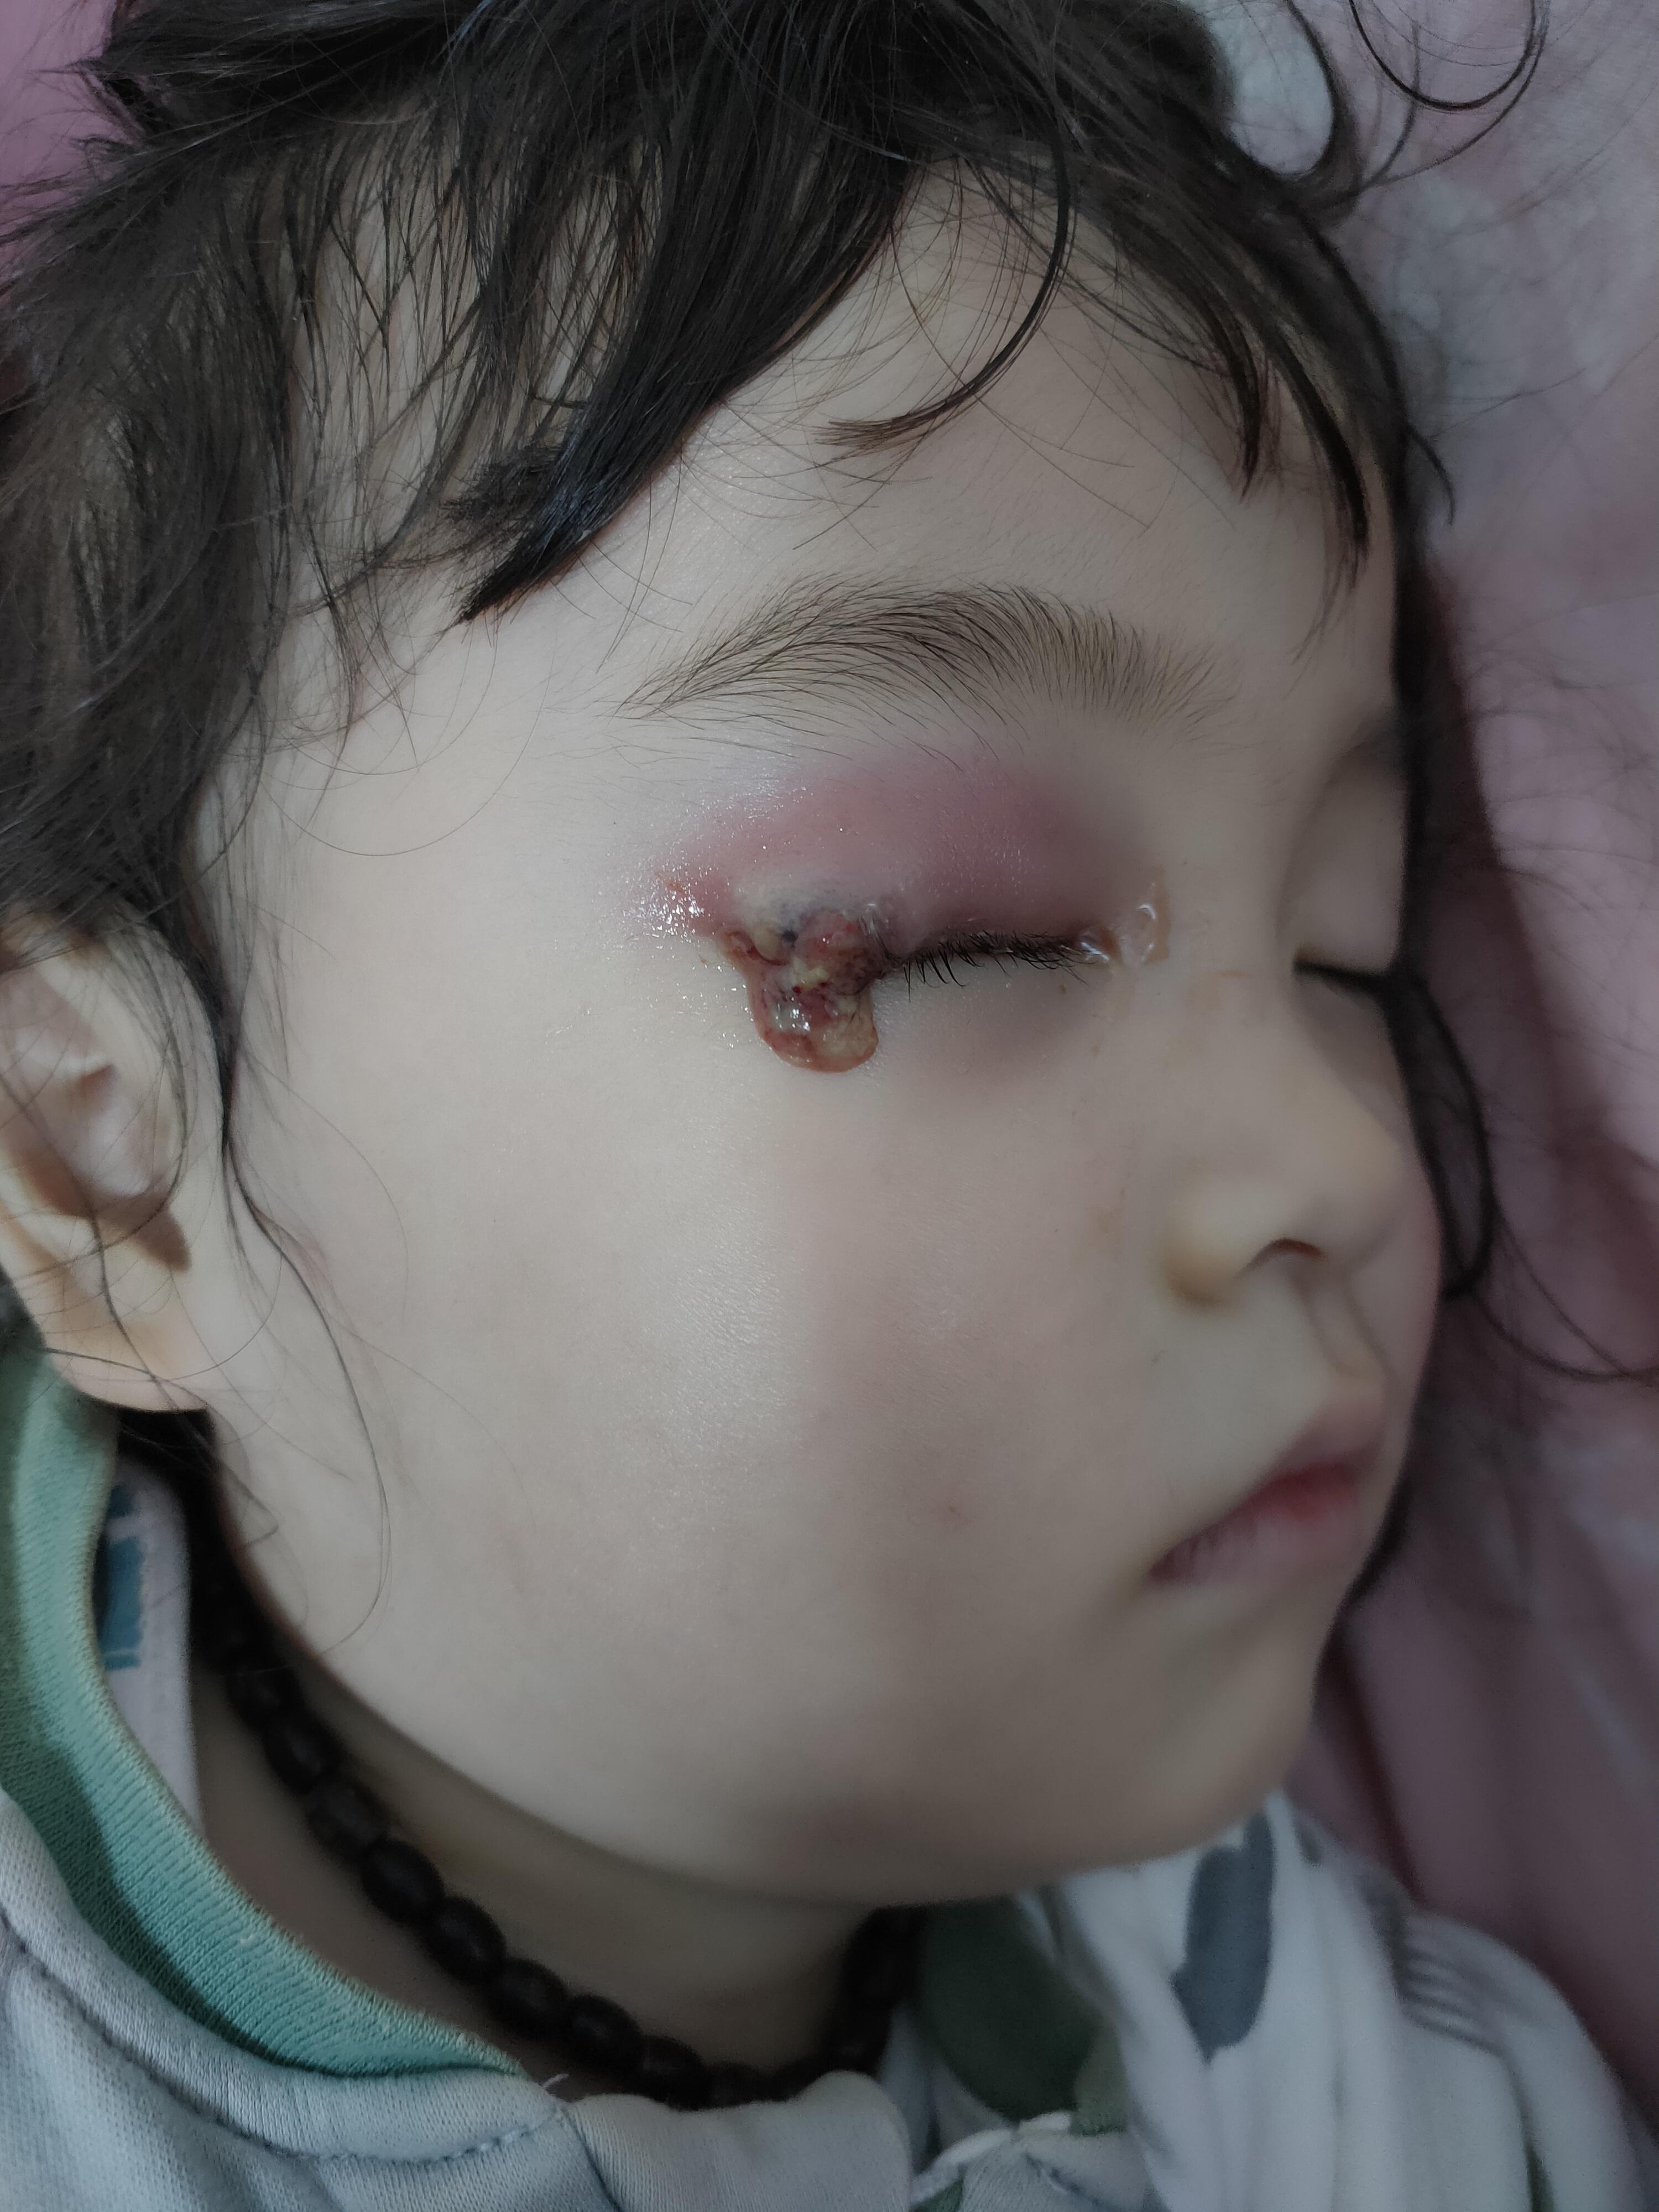 女儿眼皮上的麦粒肿,睡觉的时候终于破了,幸好是睡梦中